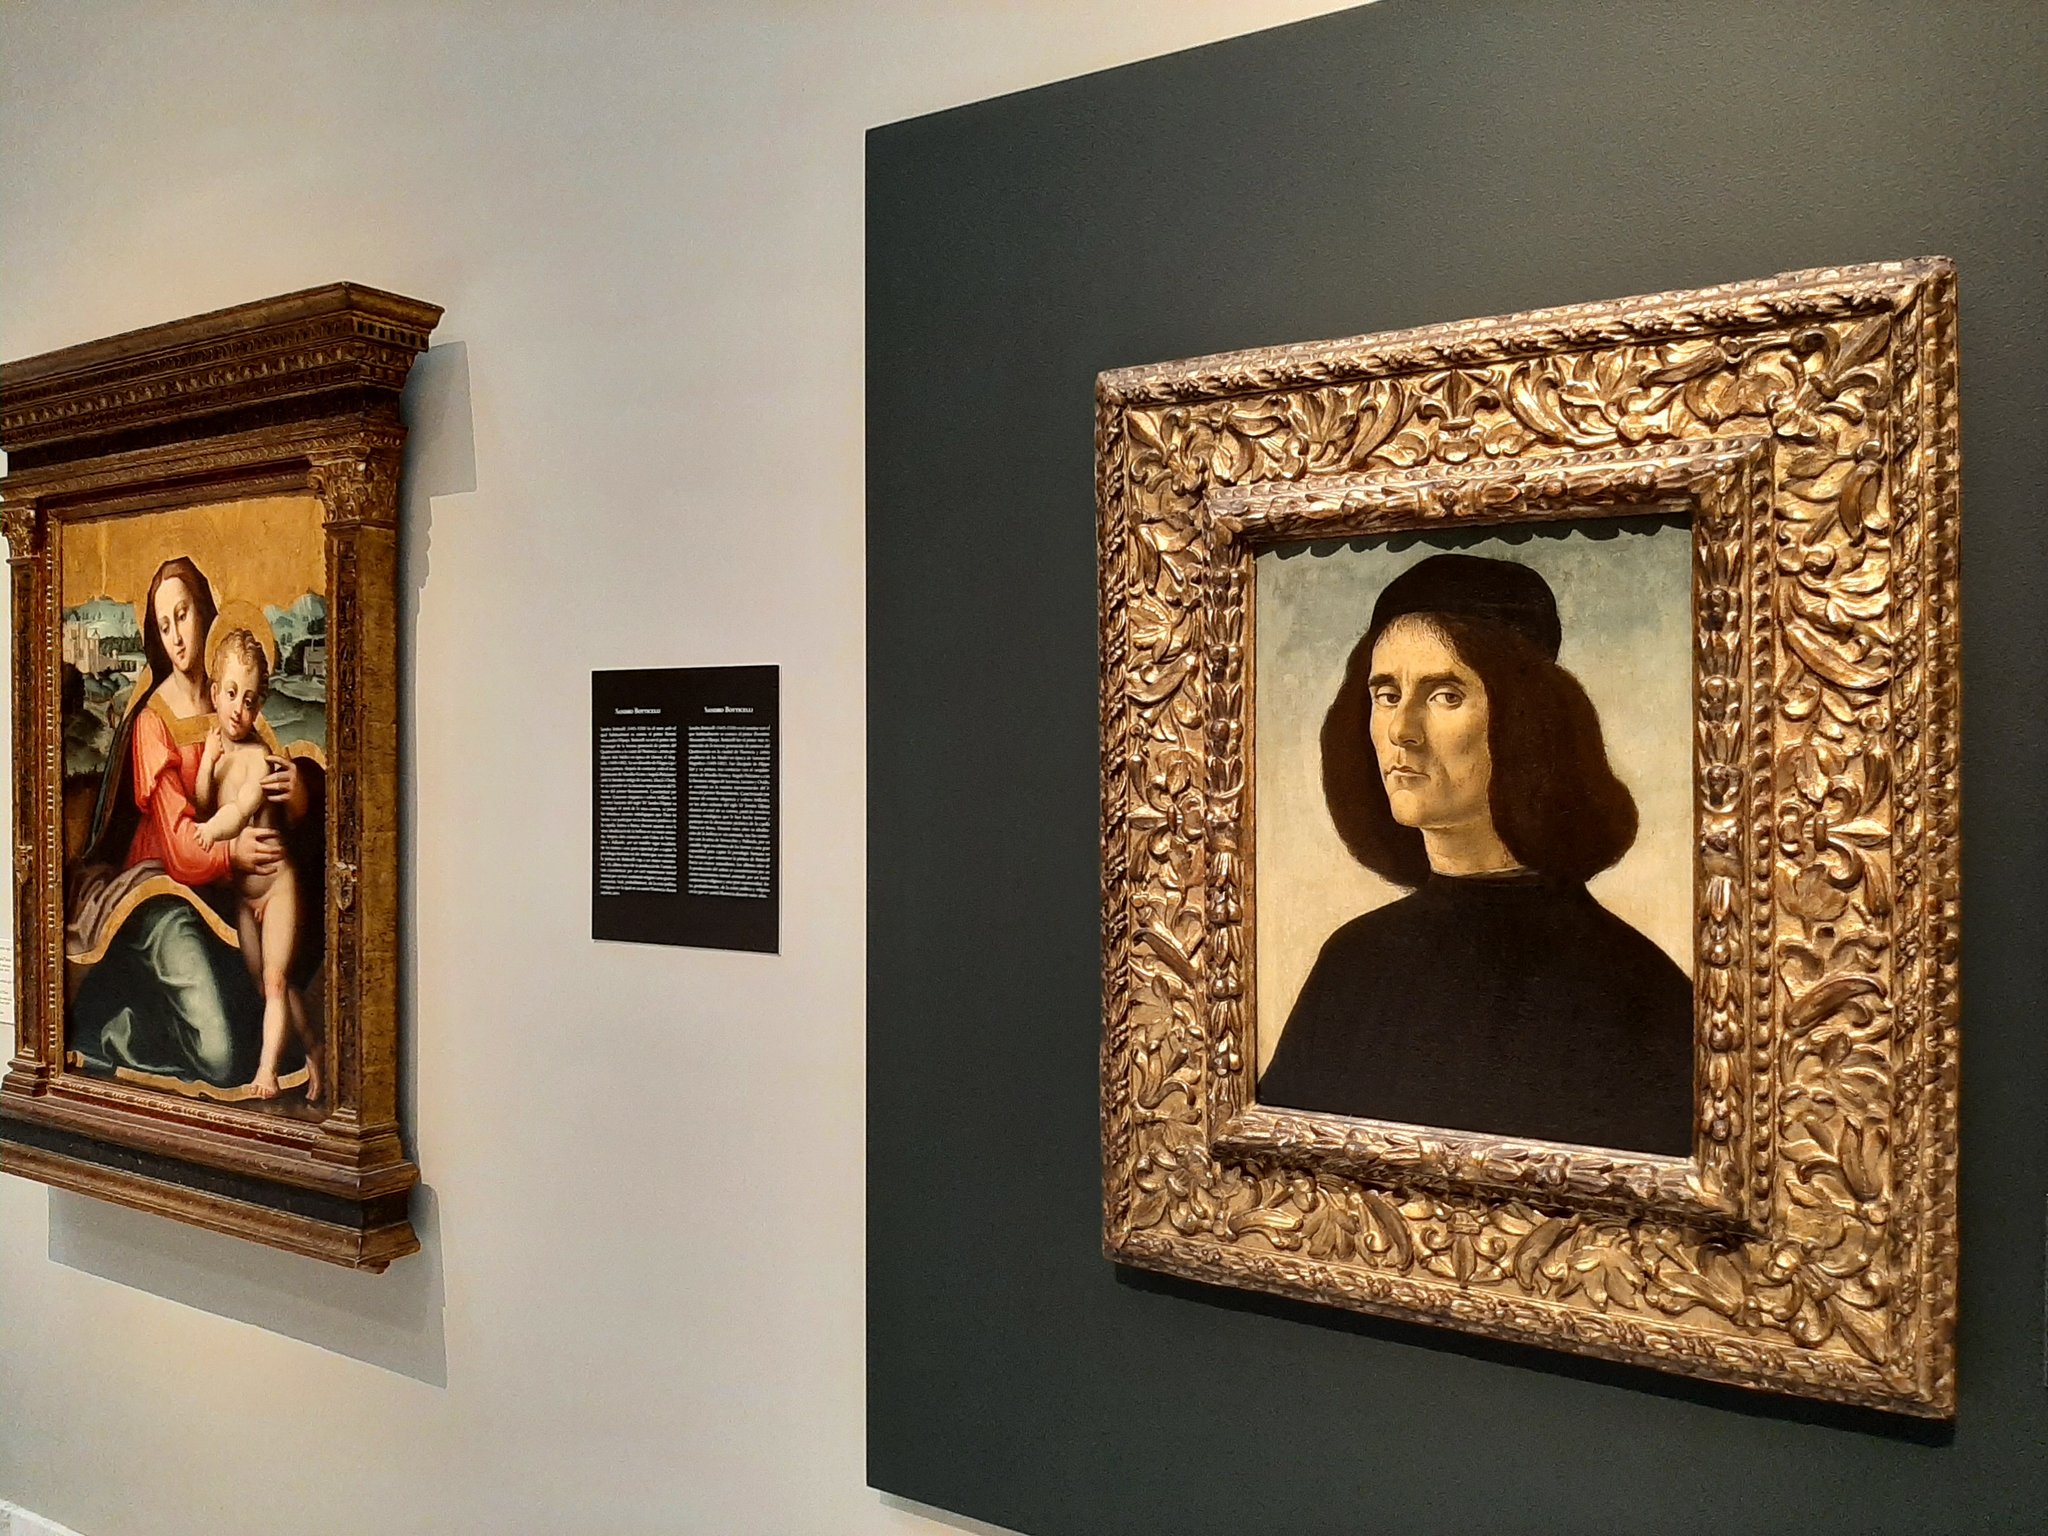 El Museu de Belles Arts de València ja exhibeix el retrat de Michele Marullo pintat per Botticelli